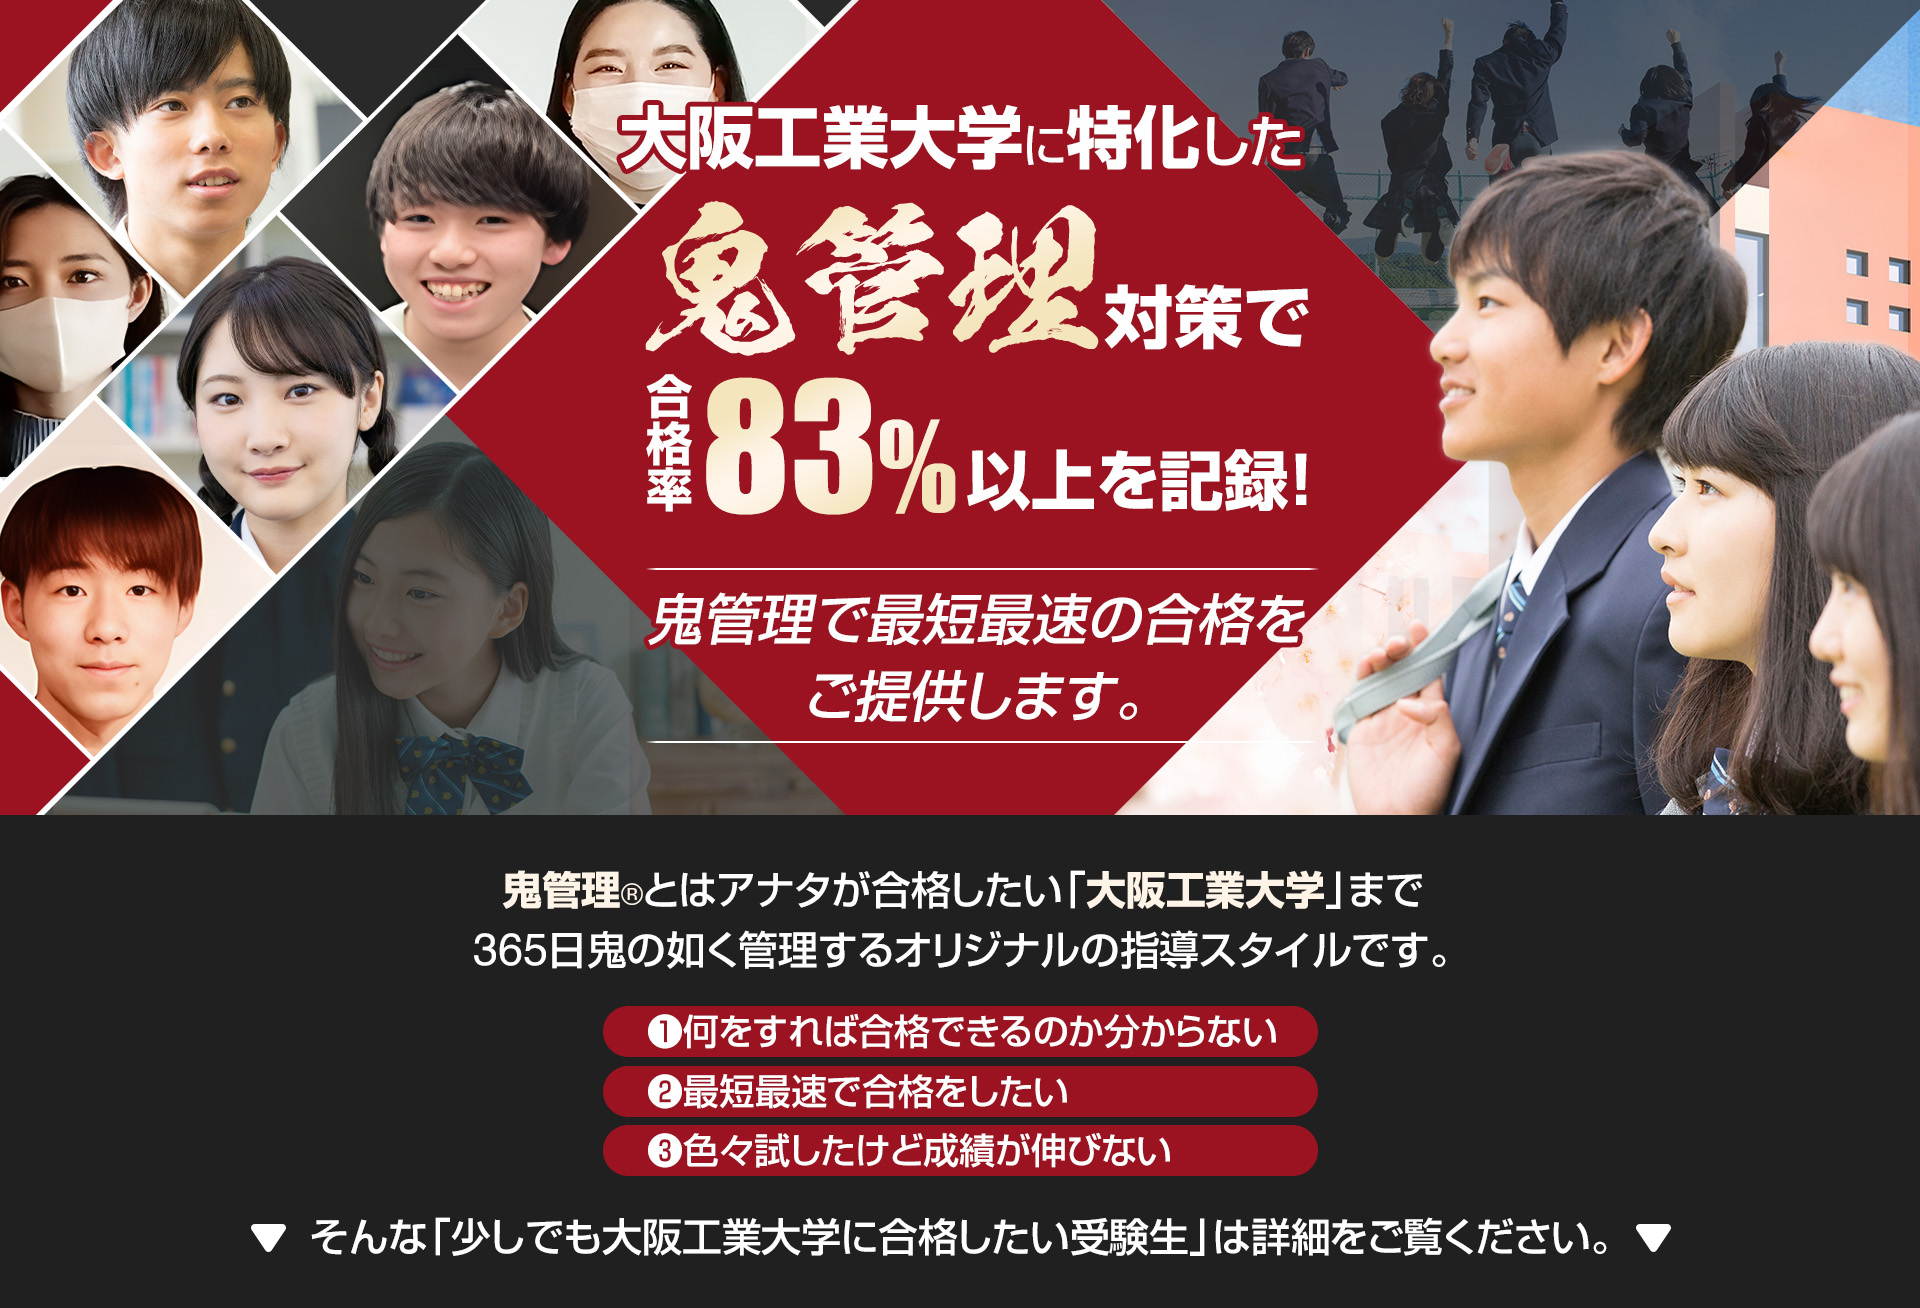 大阪工業大学に特化した鬼管理対策で合格率83％以上を記録。鬼管理でアナタが合格したい大阪工業大学への最短最速の合格を提供します。